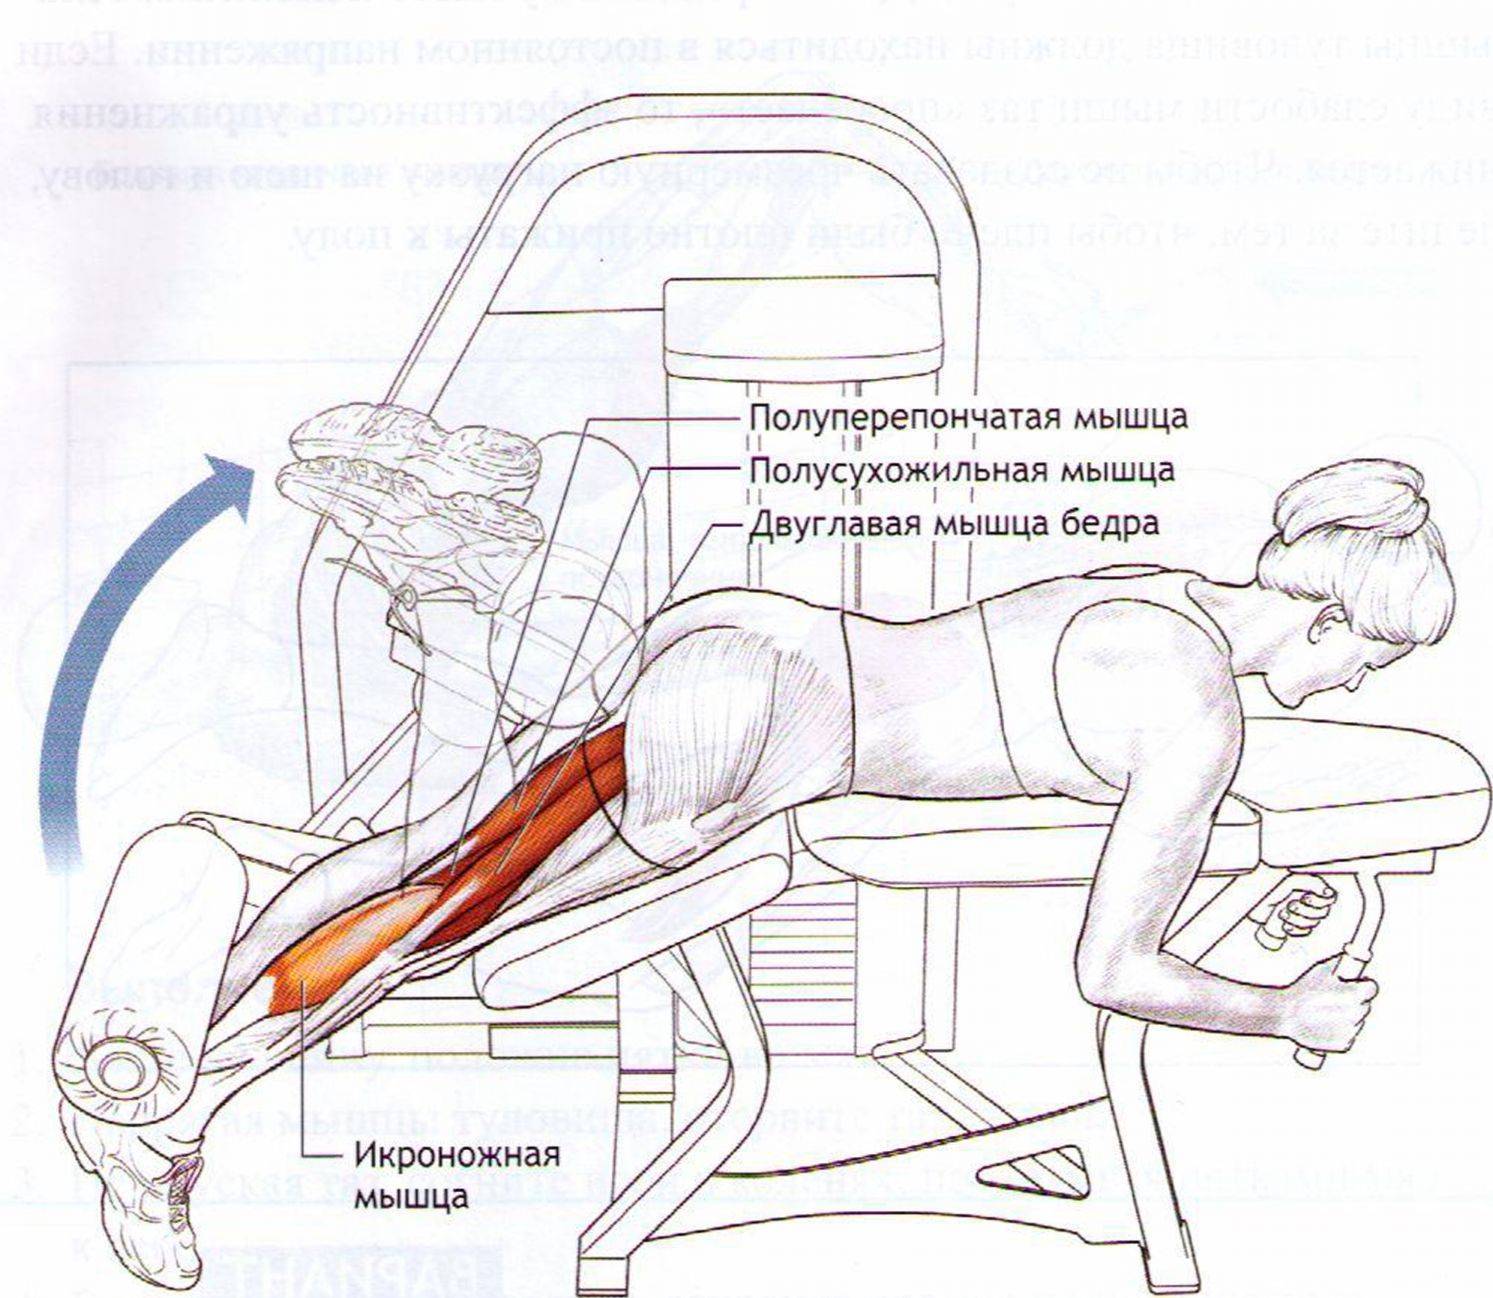 Сгибание и разгибание ног в тренажере: назначение упражнения, техника выполнения